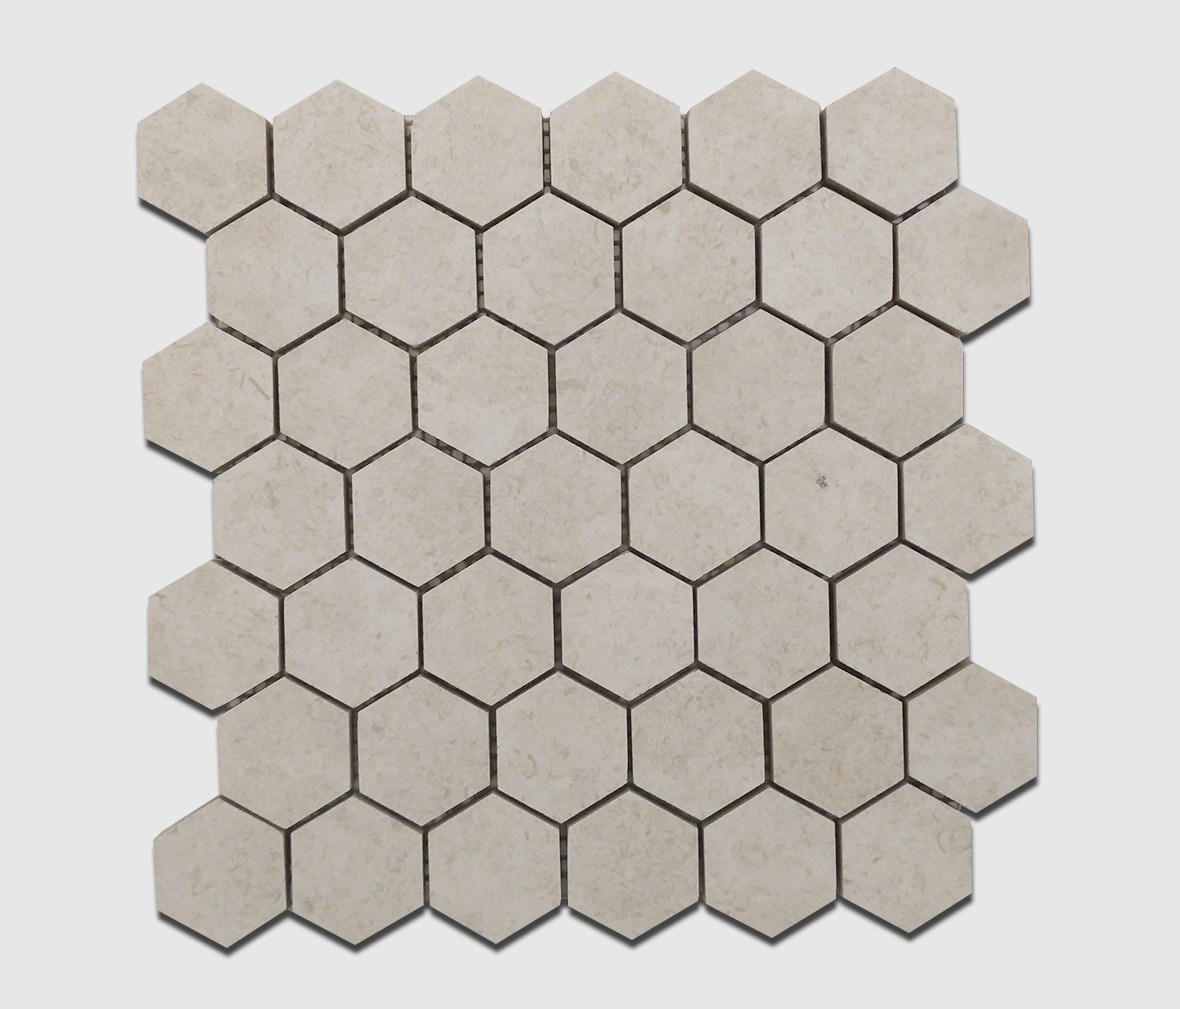 达米雅瓷砖 DR6101N(六边形)型号墙砖釉面砖 瓷土材质通体砖釉面砖